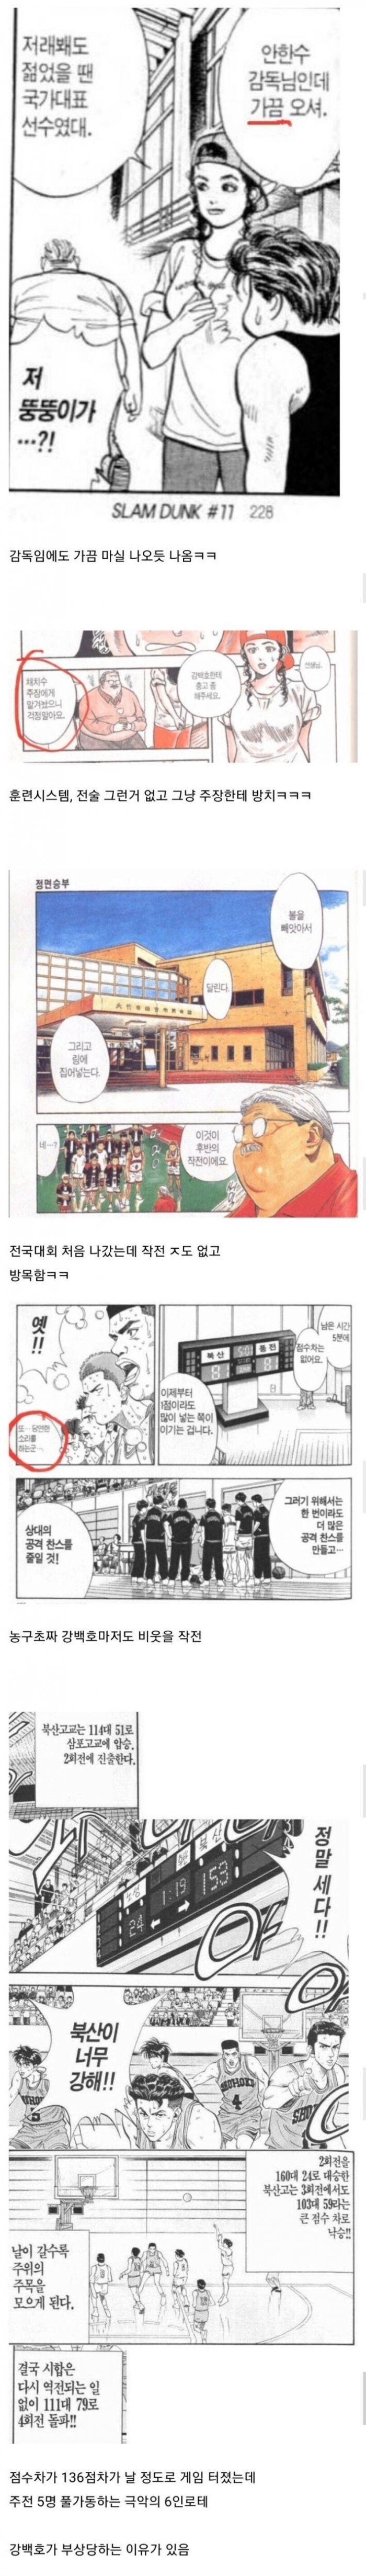 슬램덩크 안감독의 위엄2.jpg